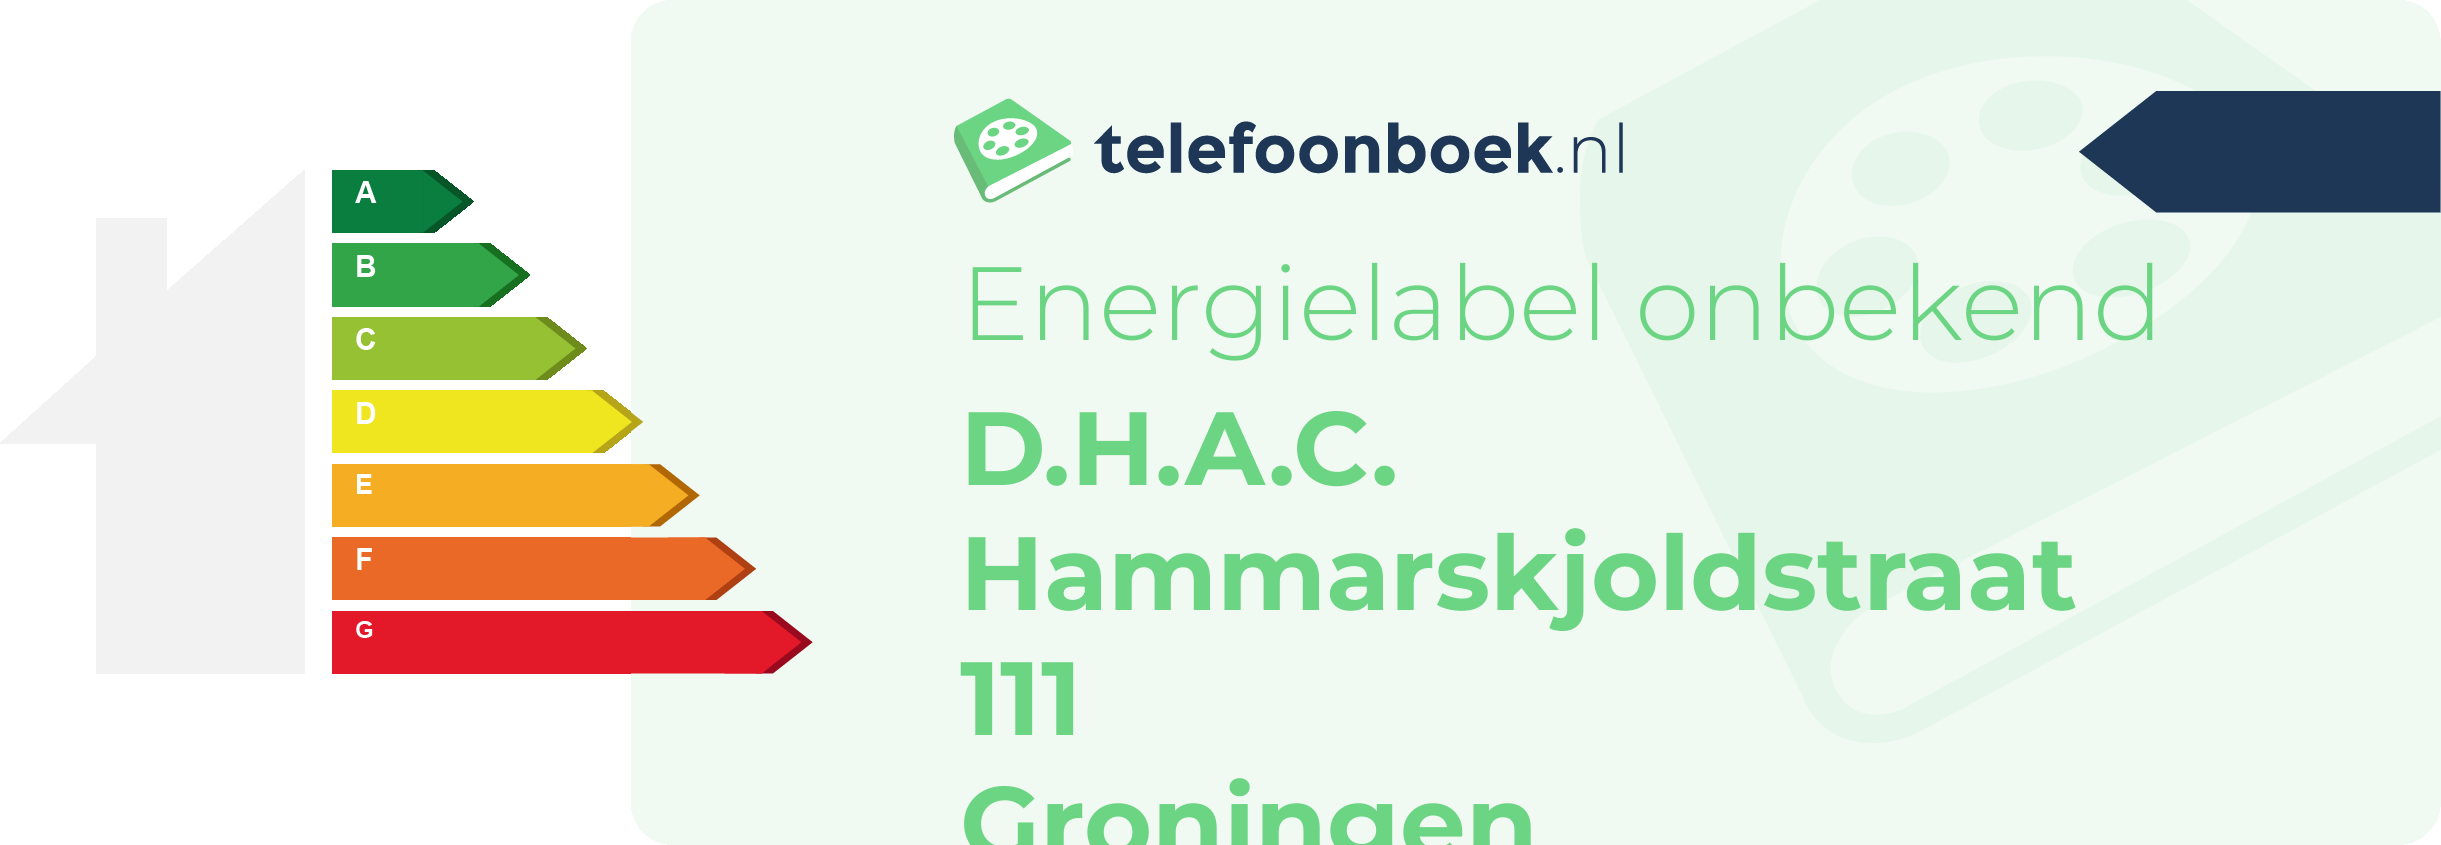 Energielabel D.H.A.C. Hammarskjoldstraat 111 Groningen